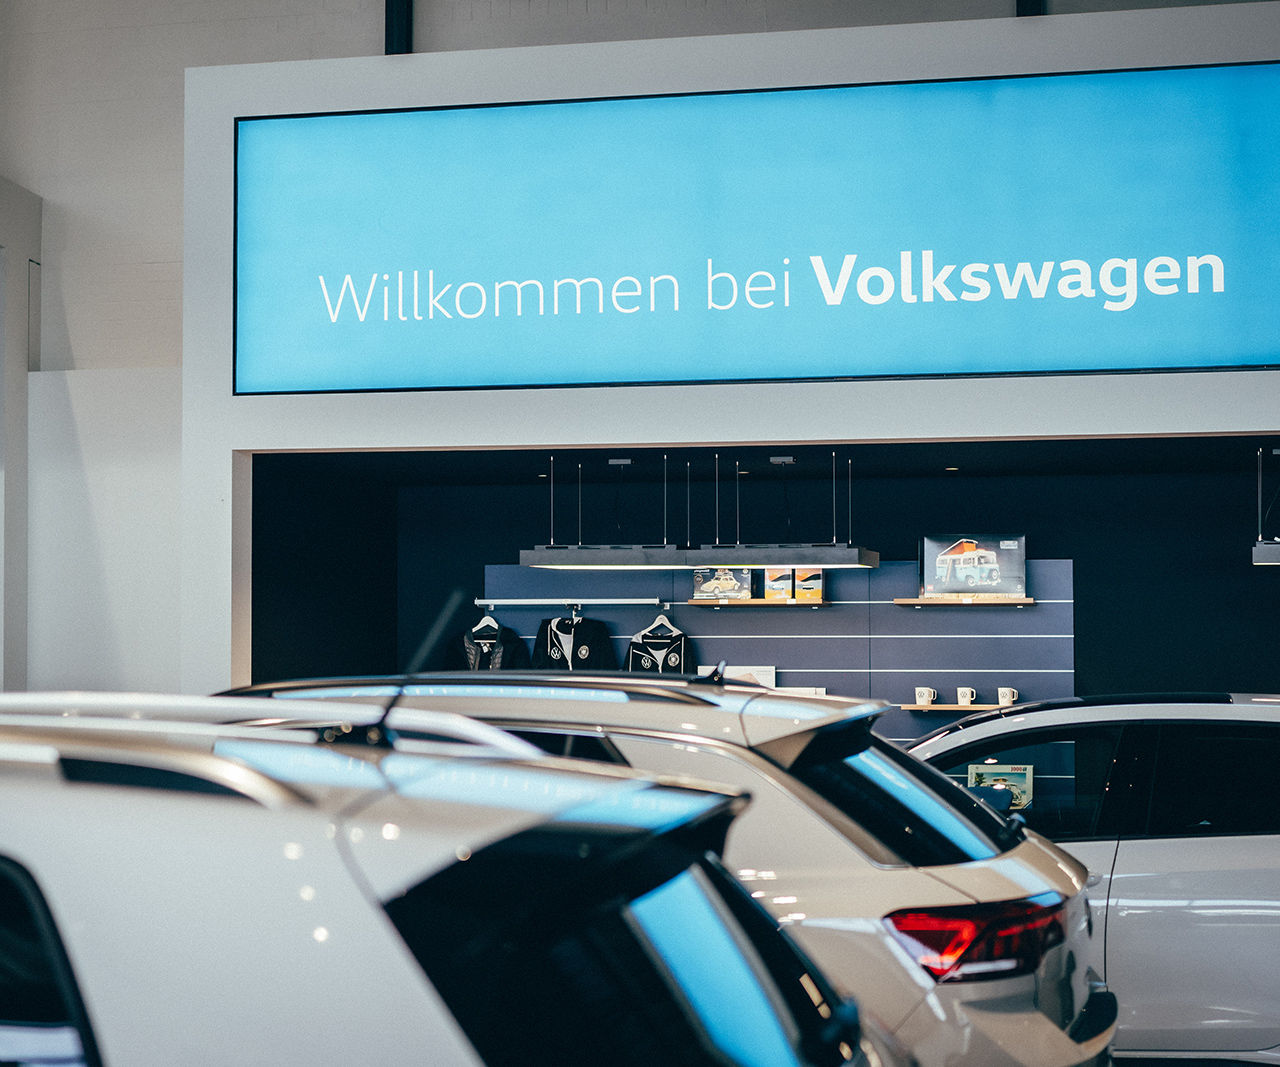 VW touareg - Odendahl & Heise GmbH